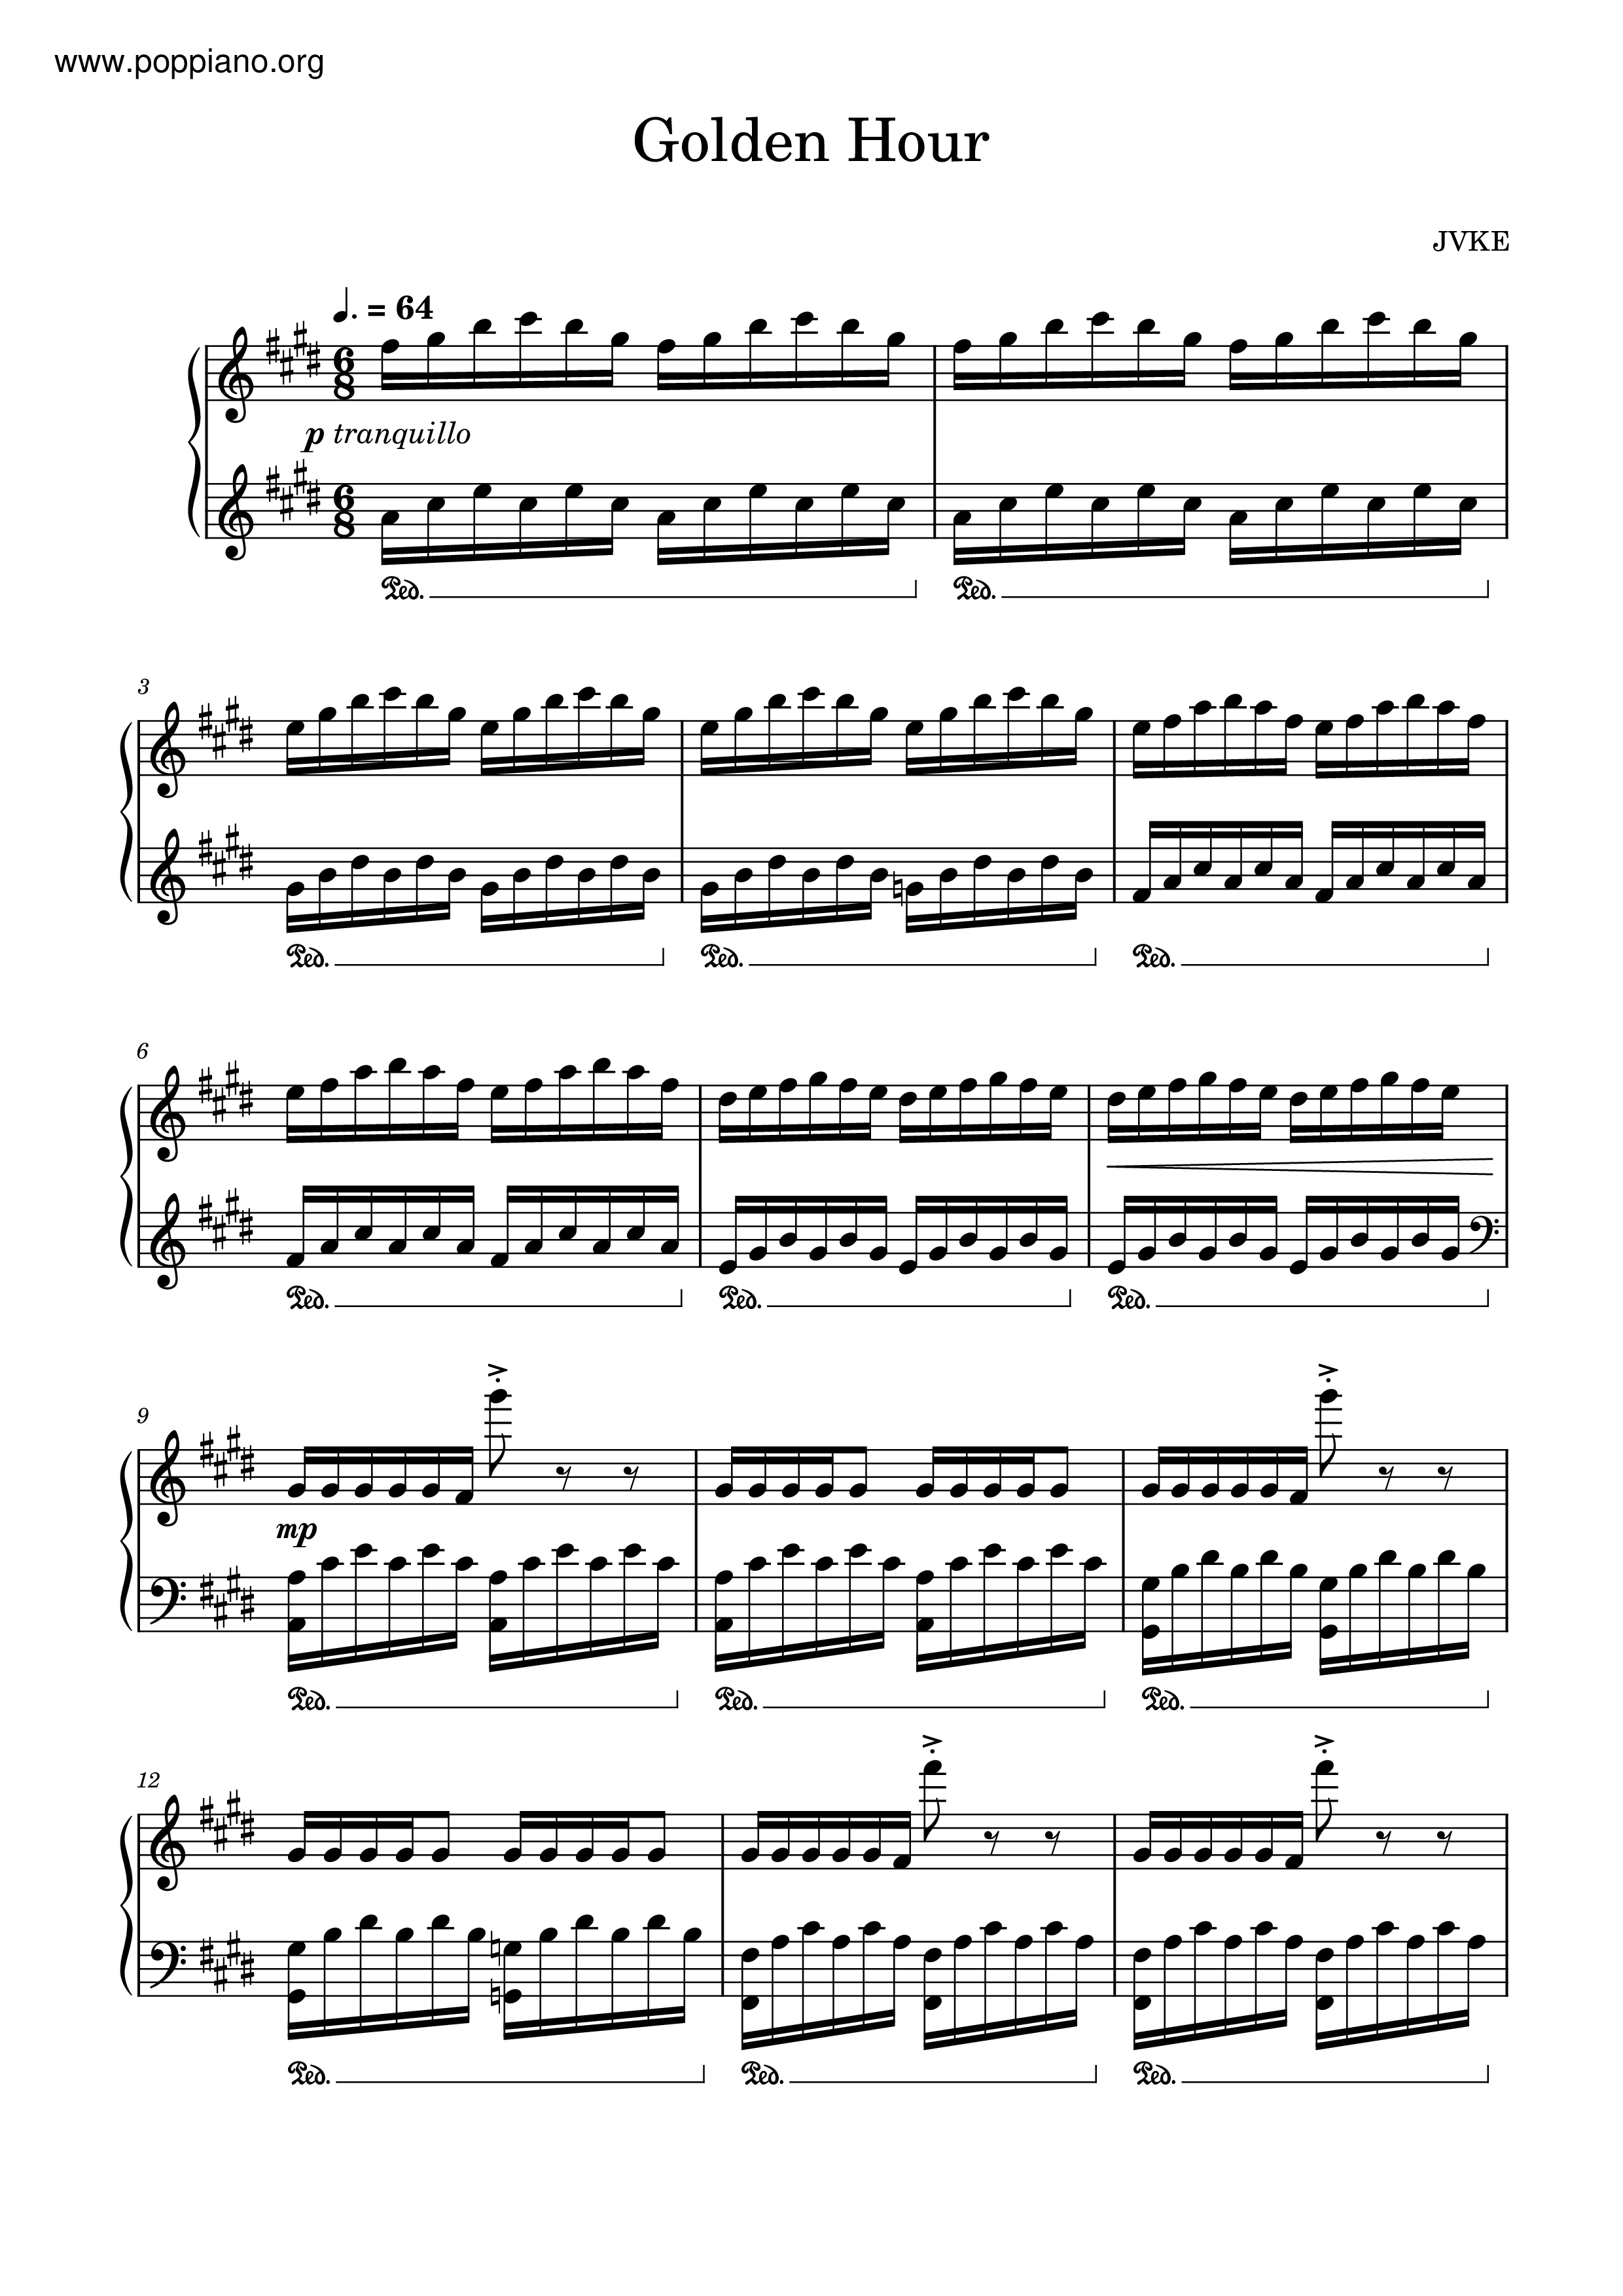 JVKE-Golden Hour 琴谱/五线谱pdf-香港流行钢琴协会琴谱下载 ★